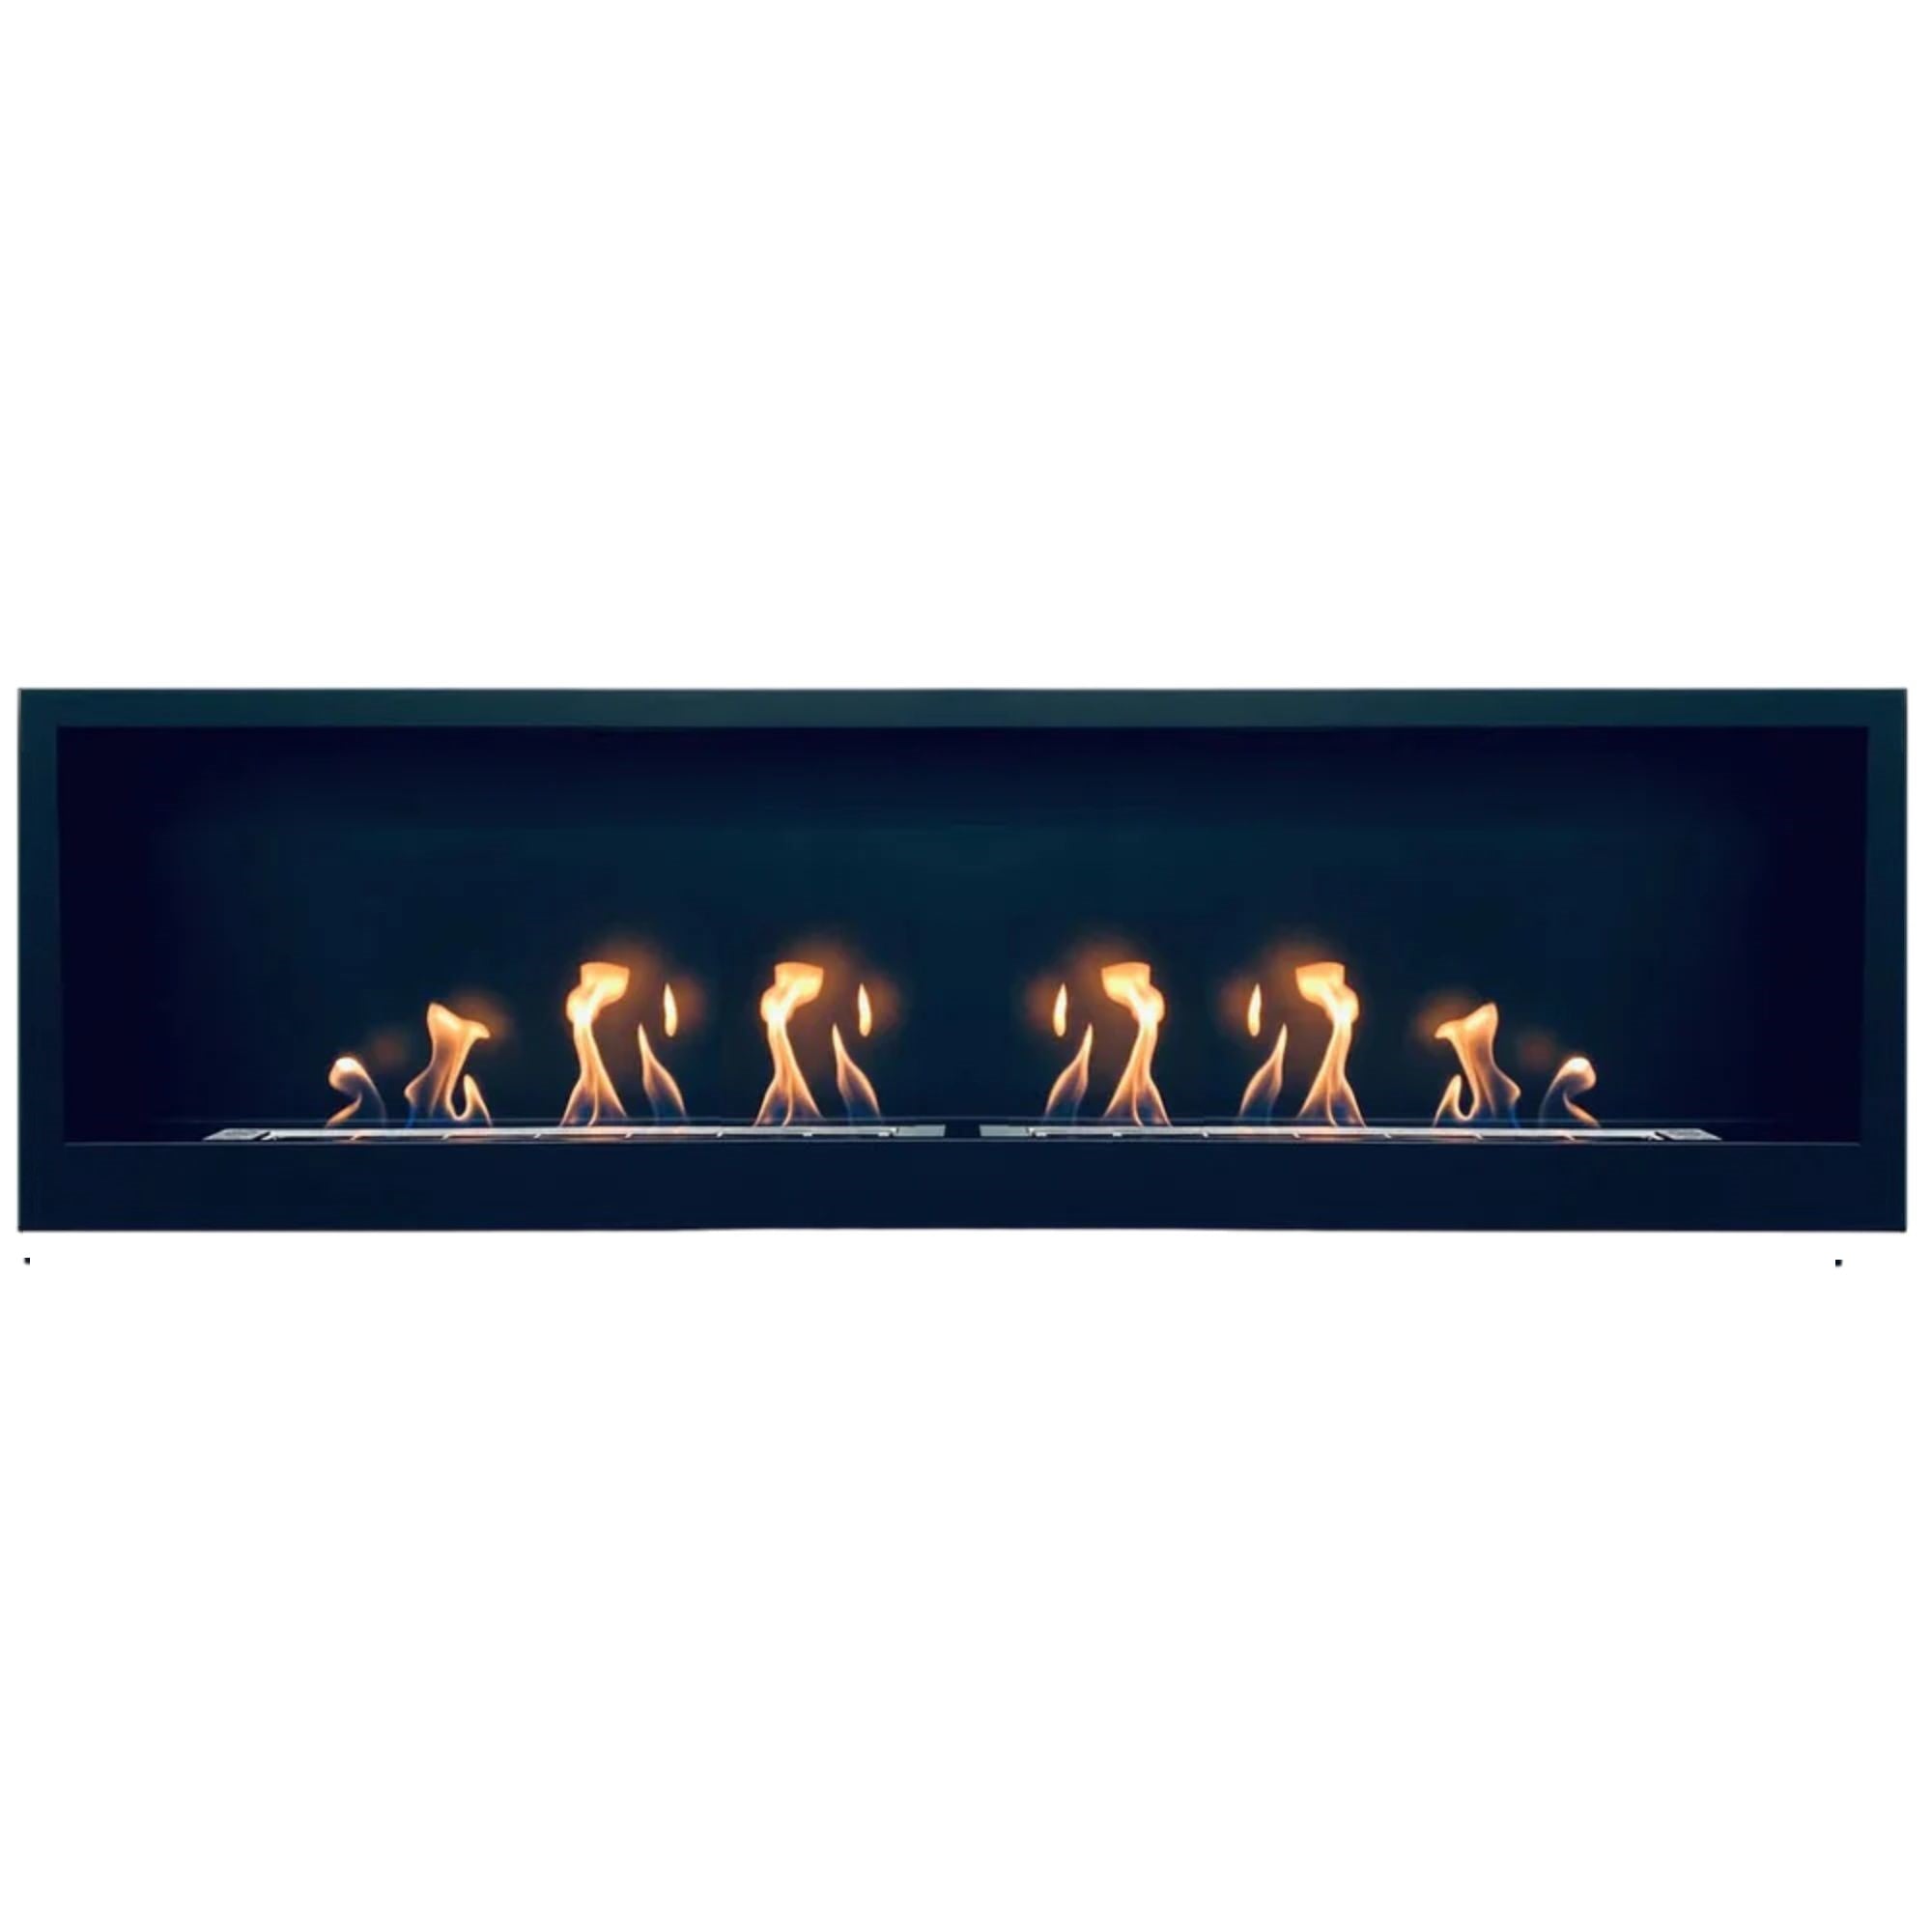 S-line Built-in Fireplace / Wall Fireplace Matt Black 3D 180 x 41.7 CM